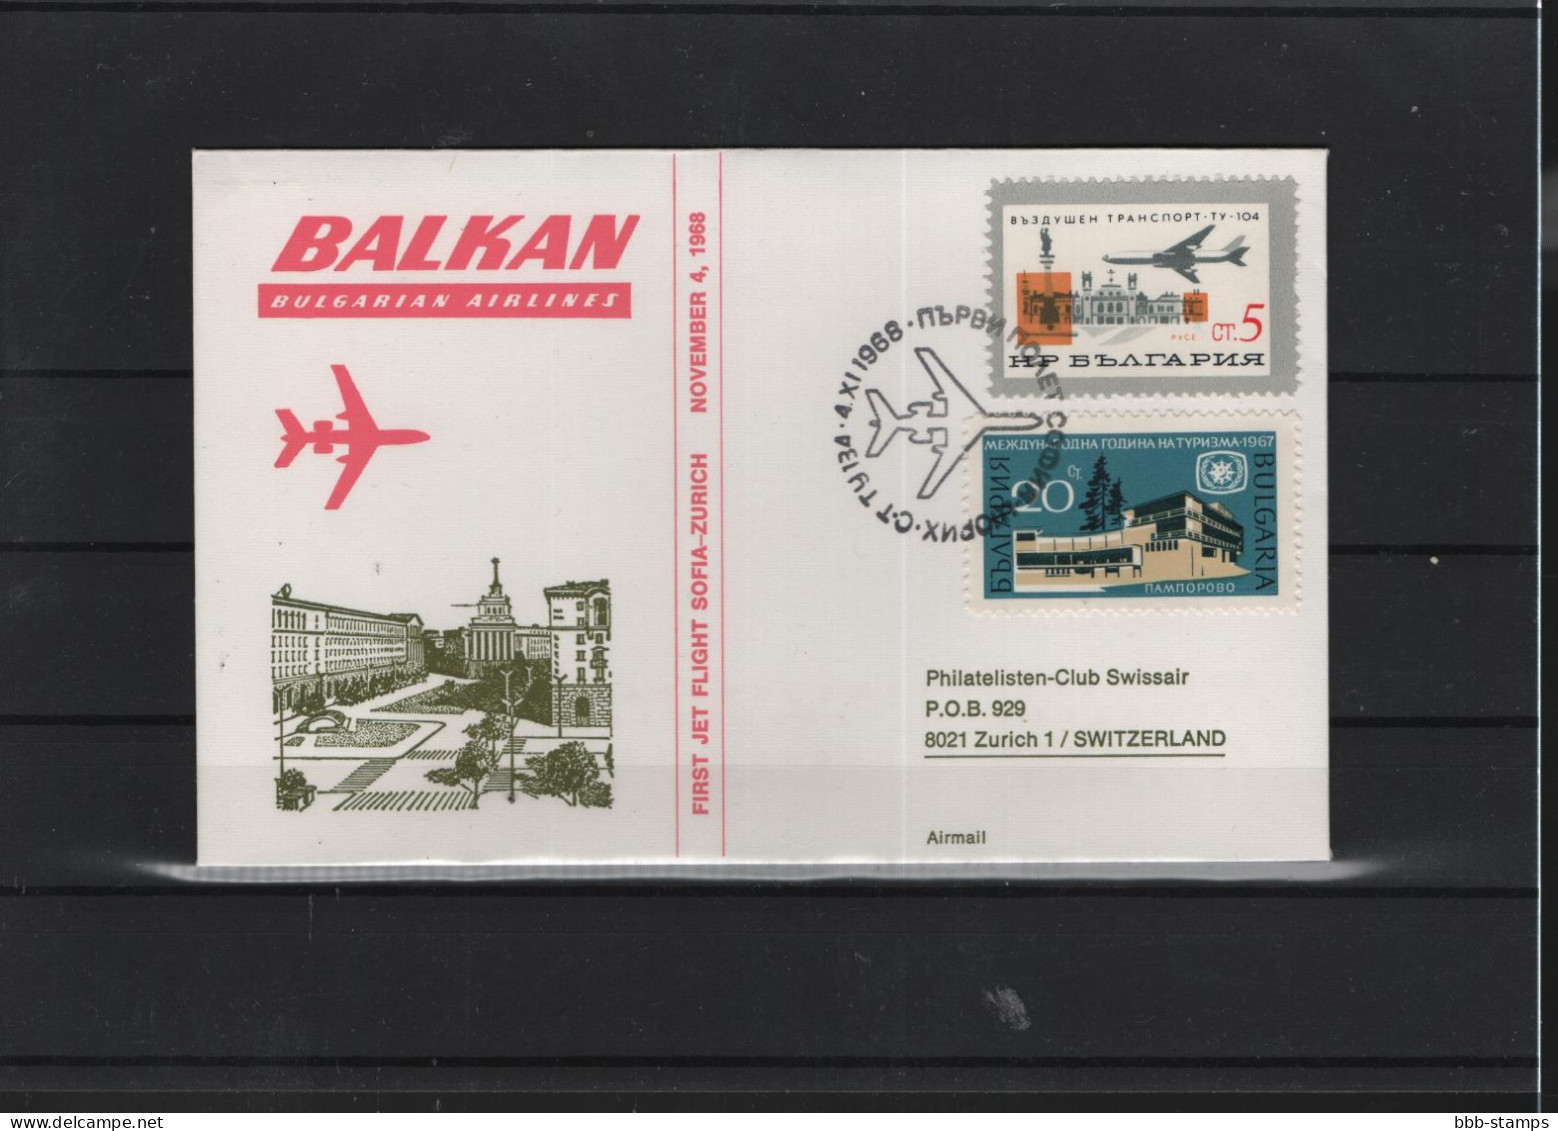 Schweiz Luftpost FFC  Balkan Air 4.11.1968 Zürich - Sofia Vv - Eerste Vluchten